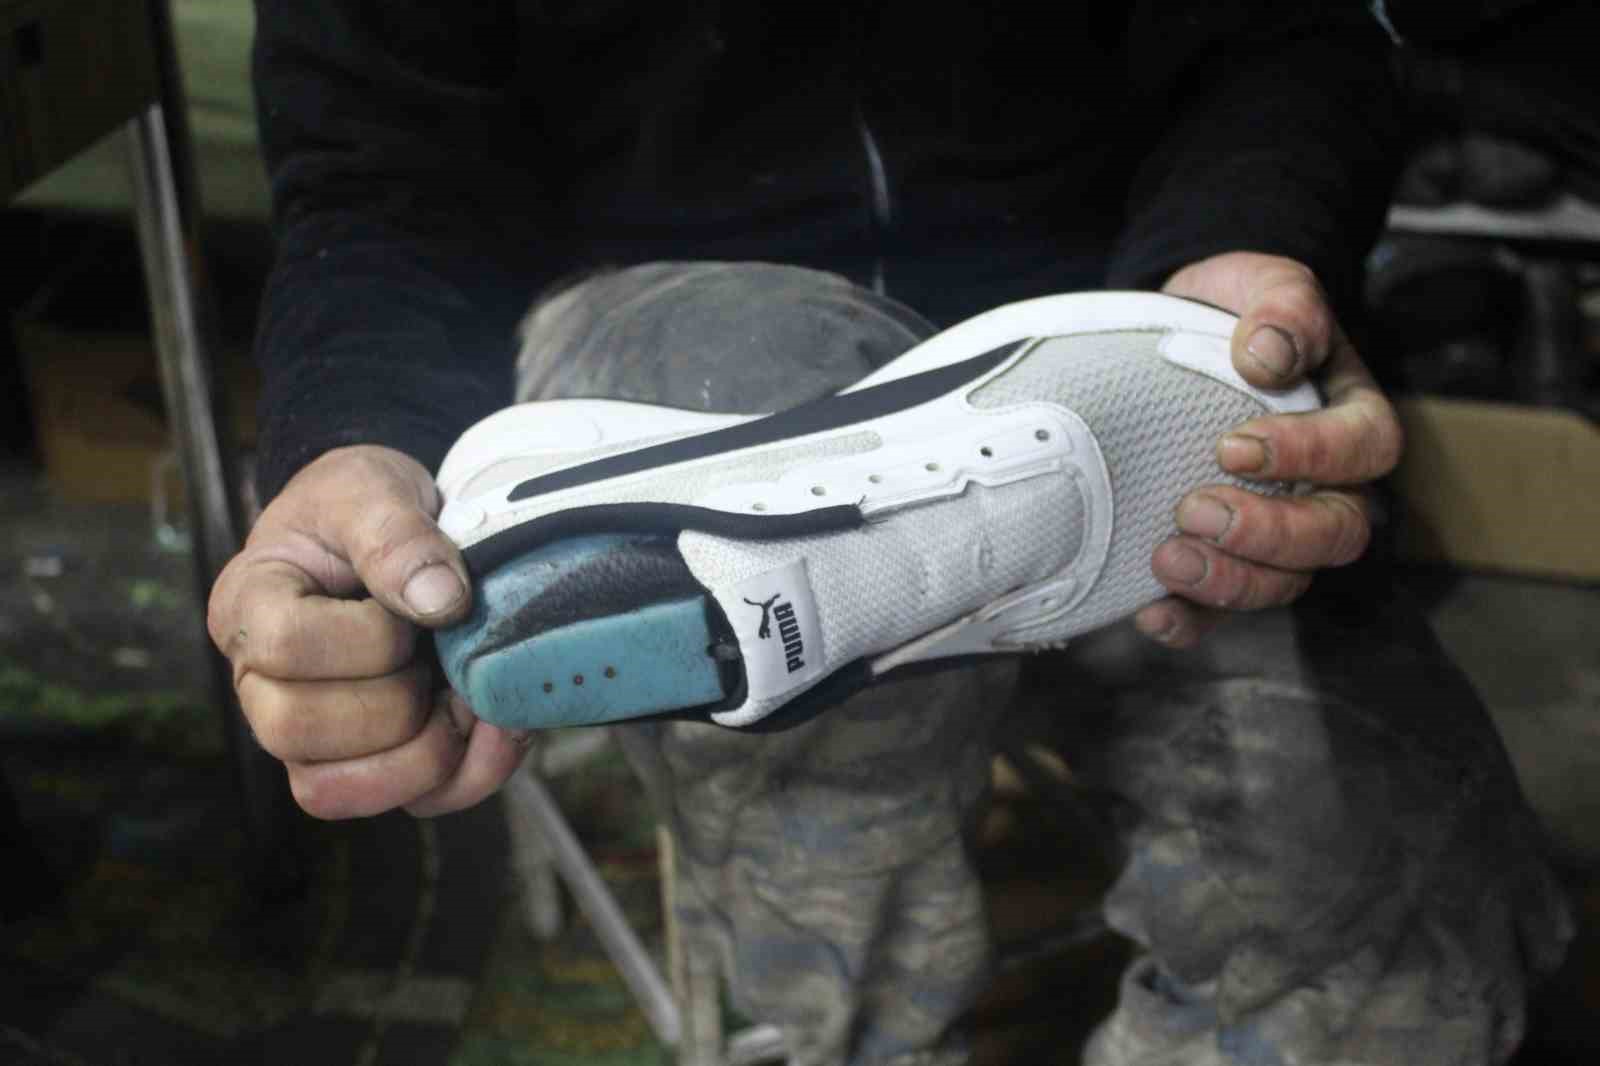 Eskişehir’de ayakkabı tamircilerinde kalıp açma mesaisi yaşanıyor